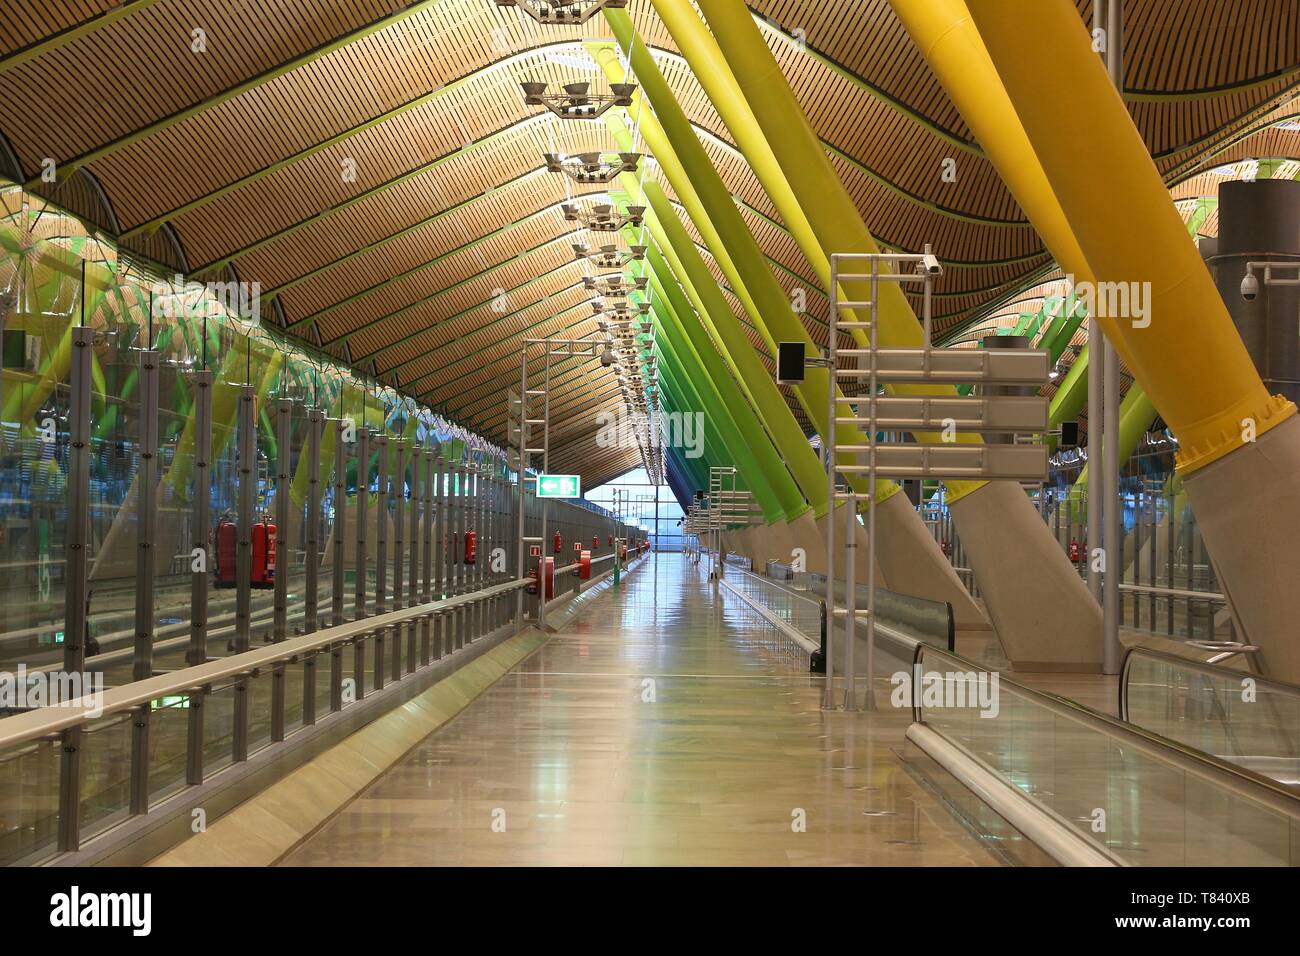 MADRID, Spanien - 6. Dezember 2016: das Innere des Terminal T4 am Flughafen Madrid Barajas in Spanien. Es ist die 6 verkehrsreichsten Flughafen Europas, mit 50,4 Mio. Stockfoto